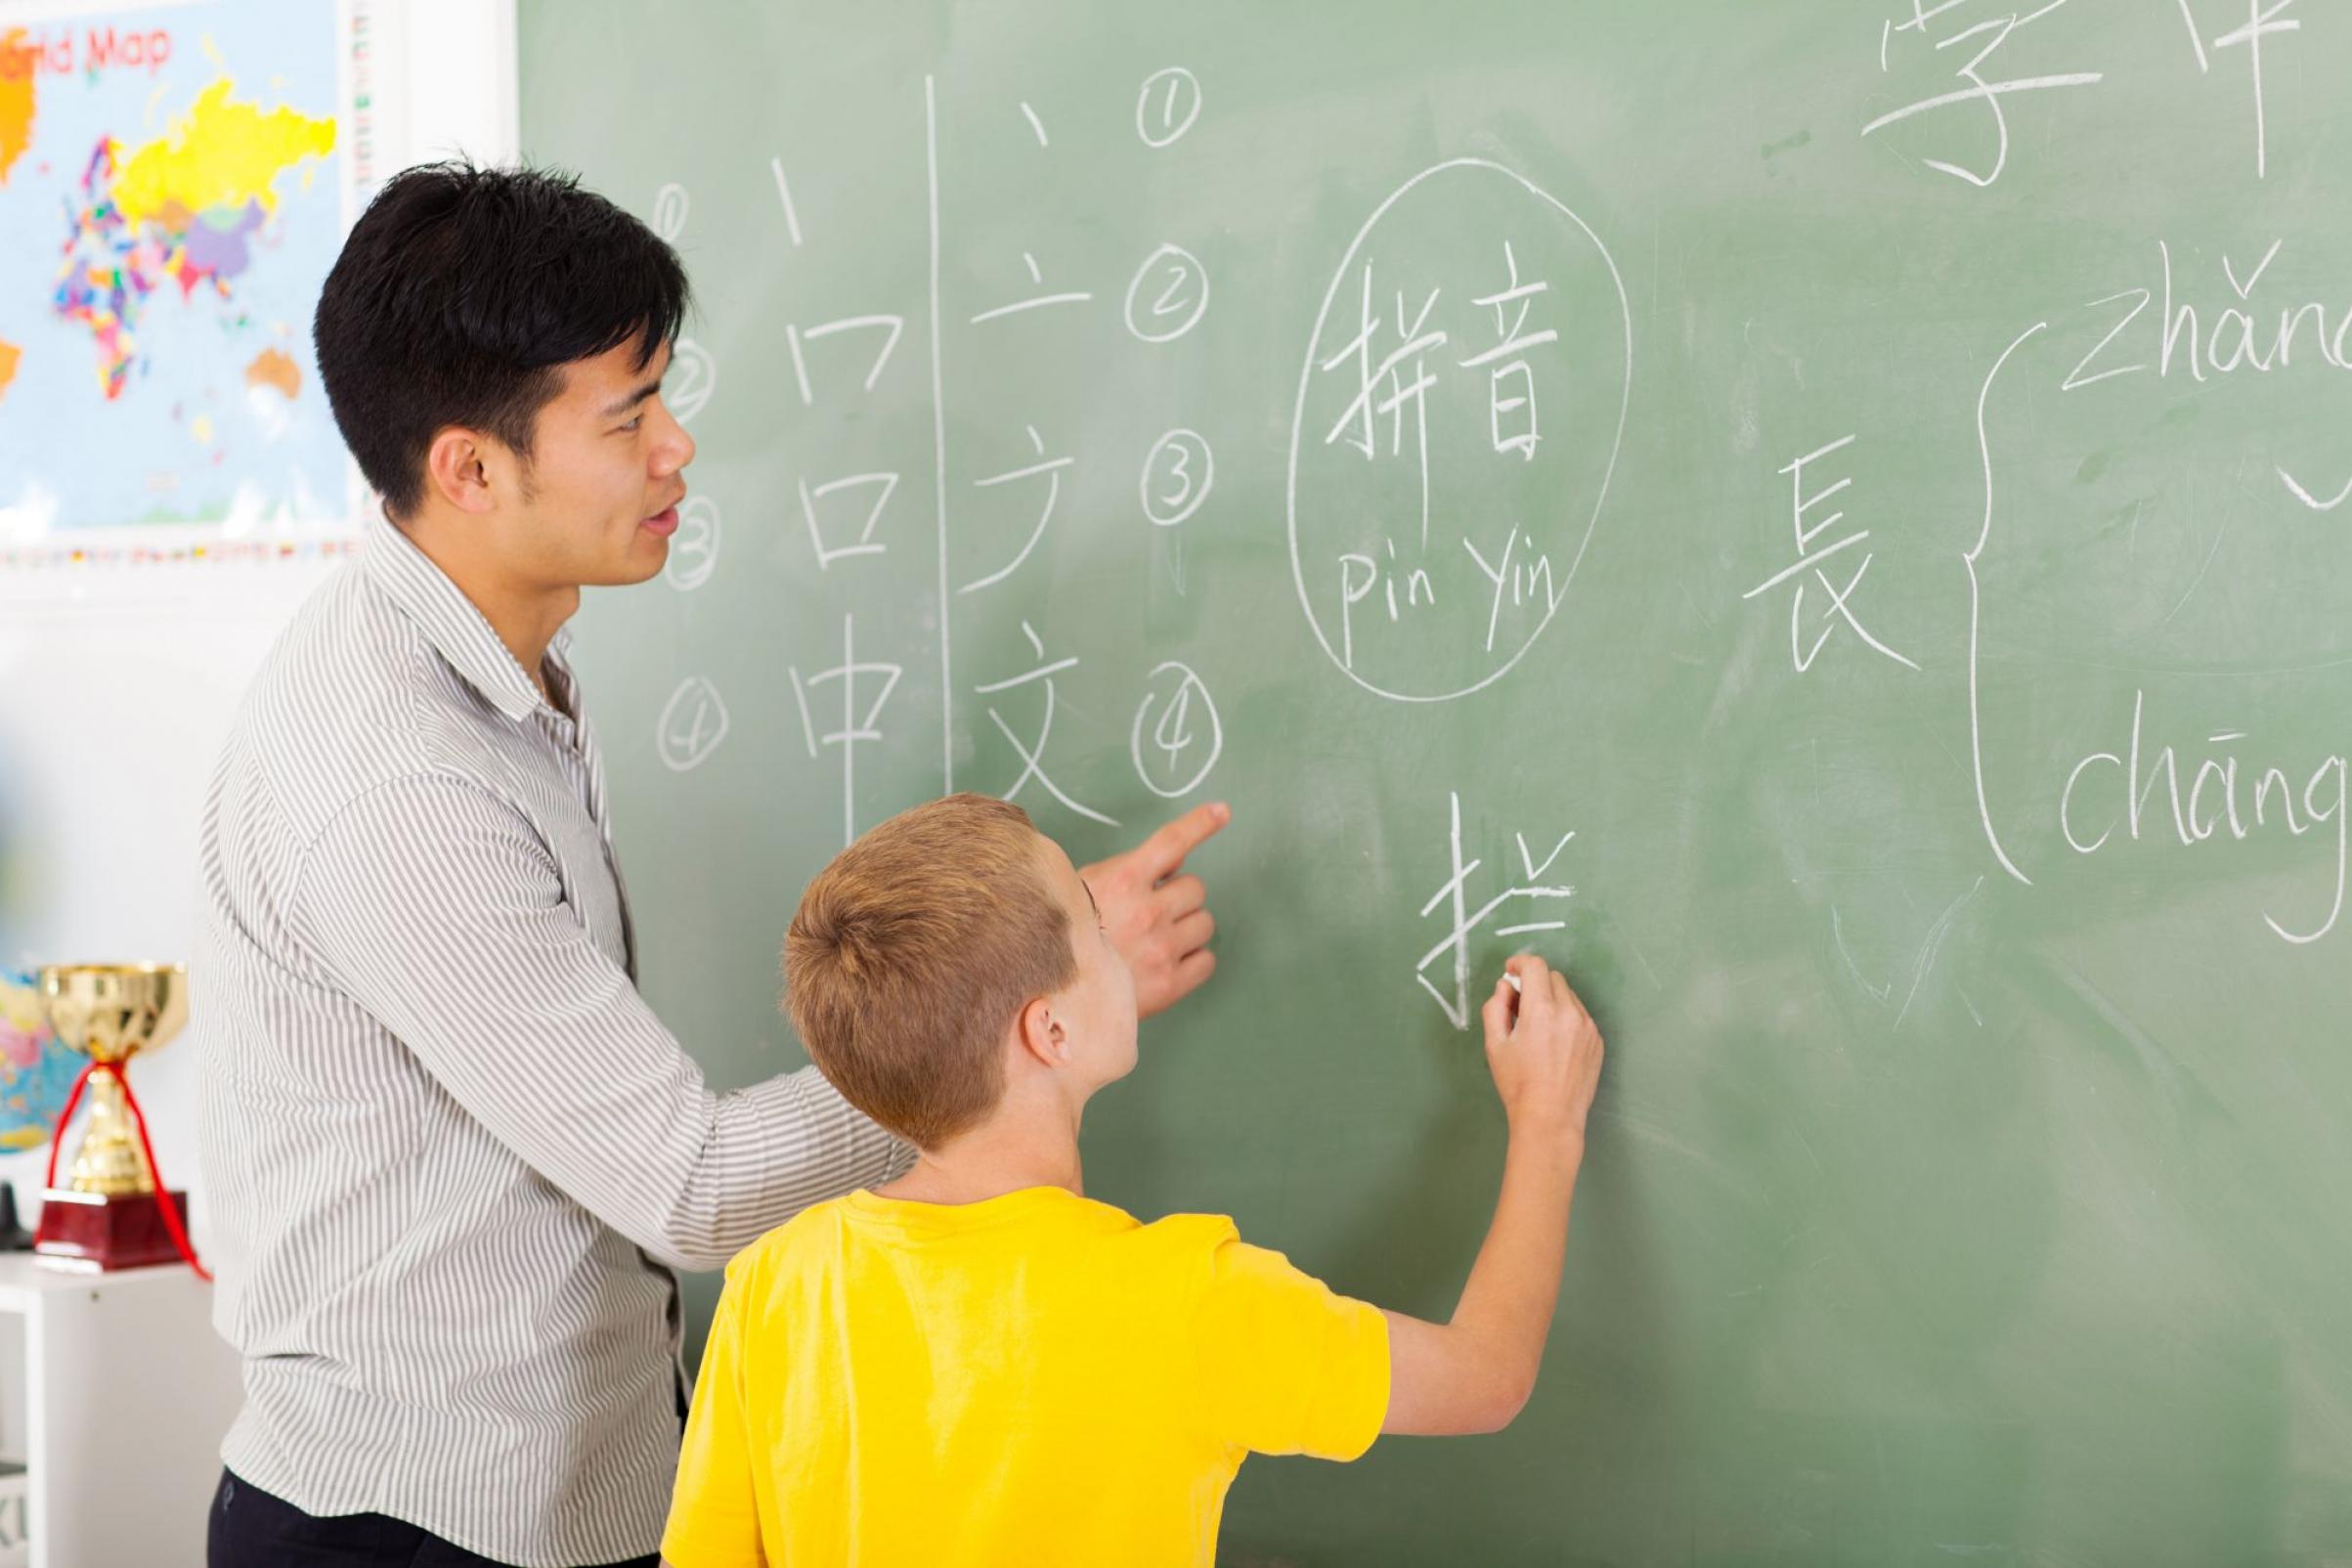 В школе китайский язык изучают 60. Урок китайского. Китайский язык. Изучение китайского языка. Школа китайского языка.